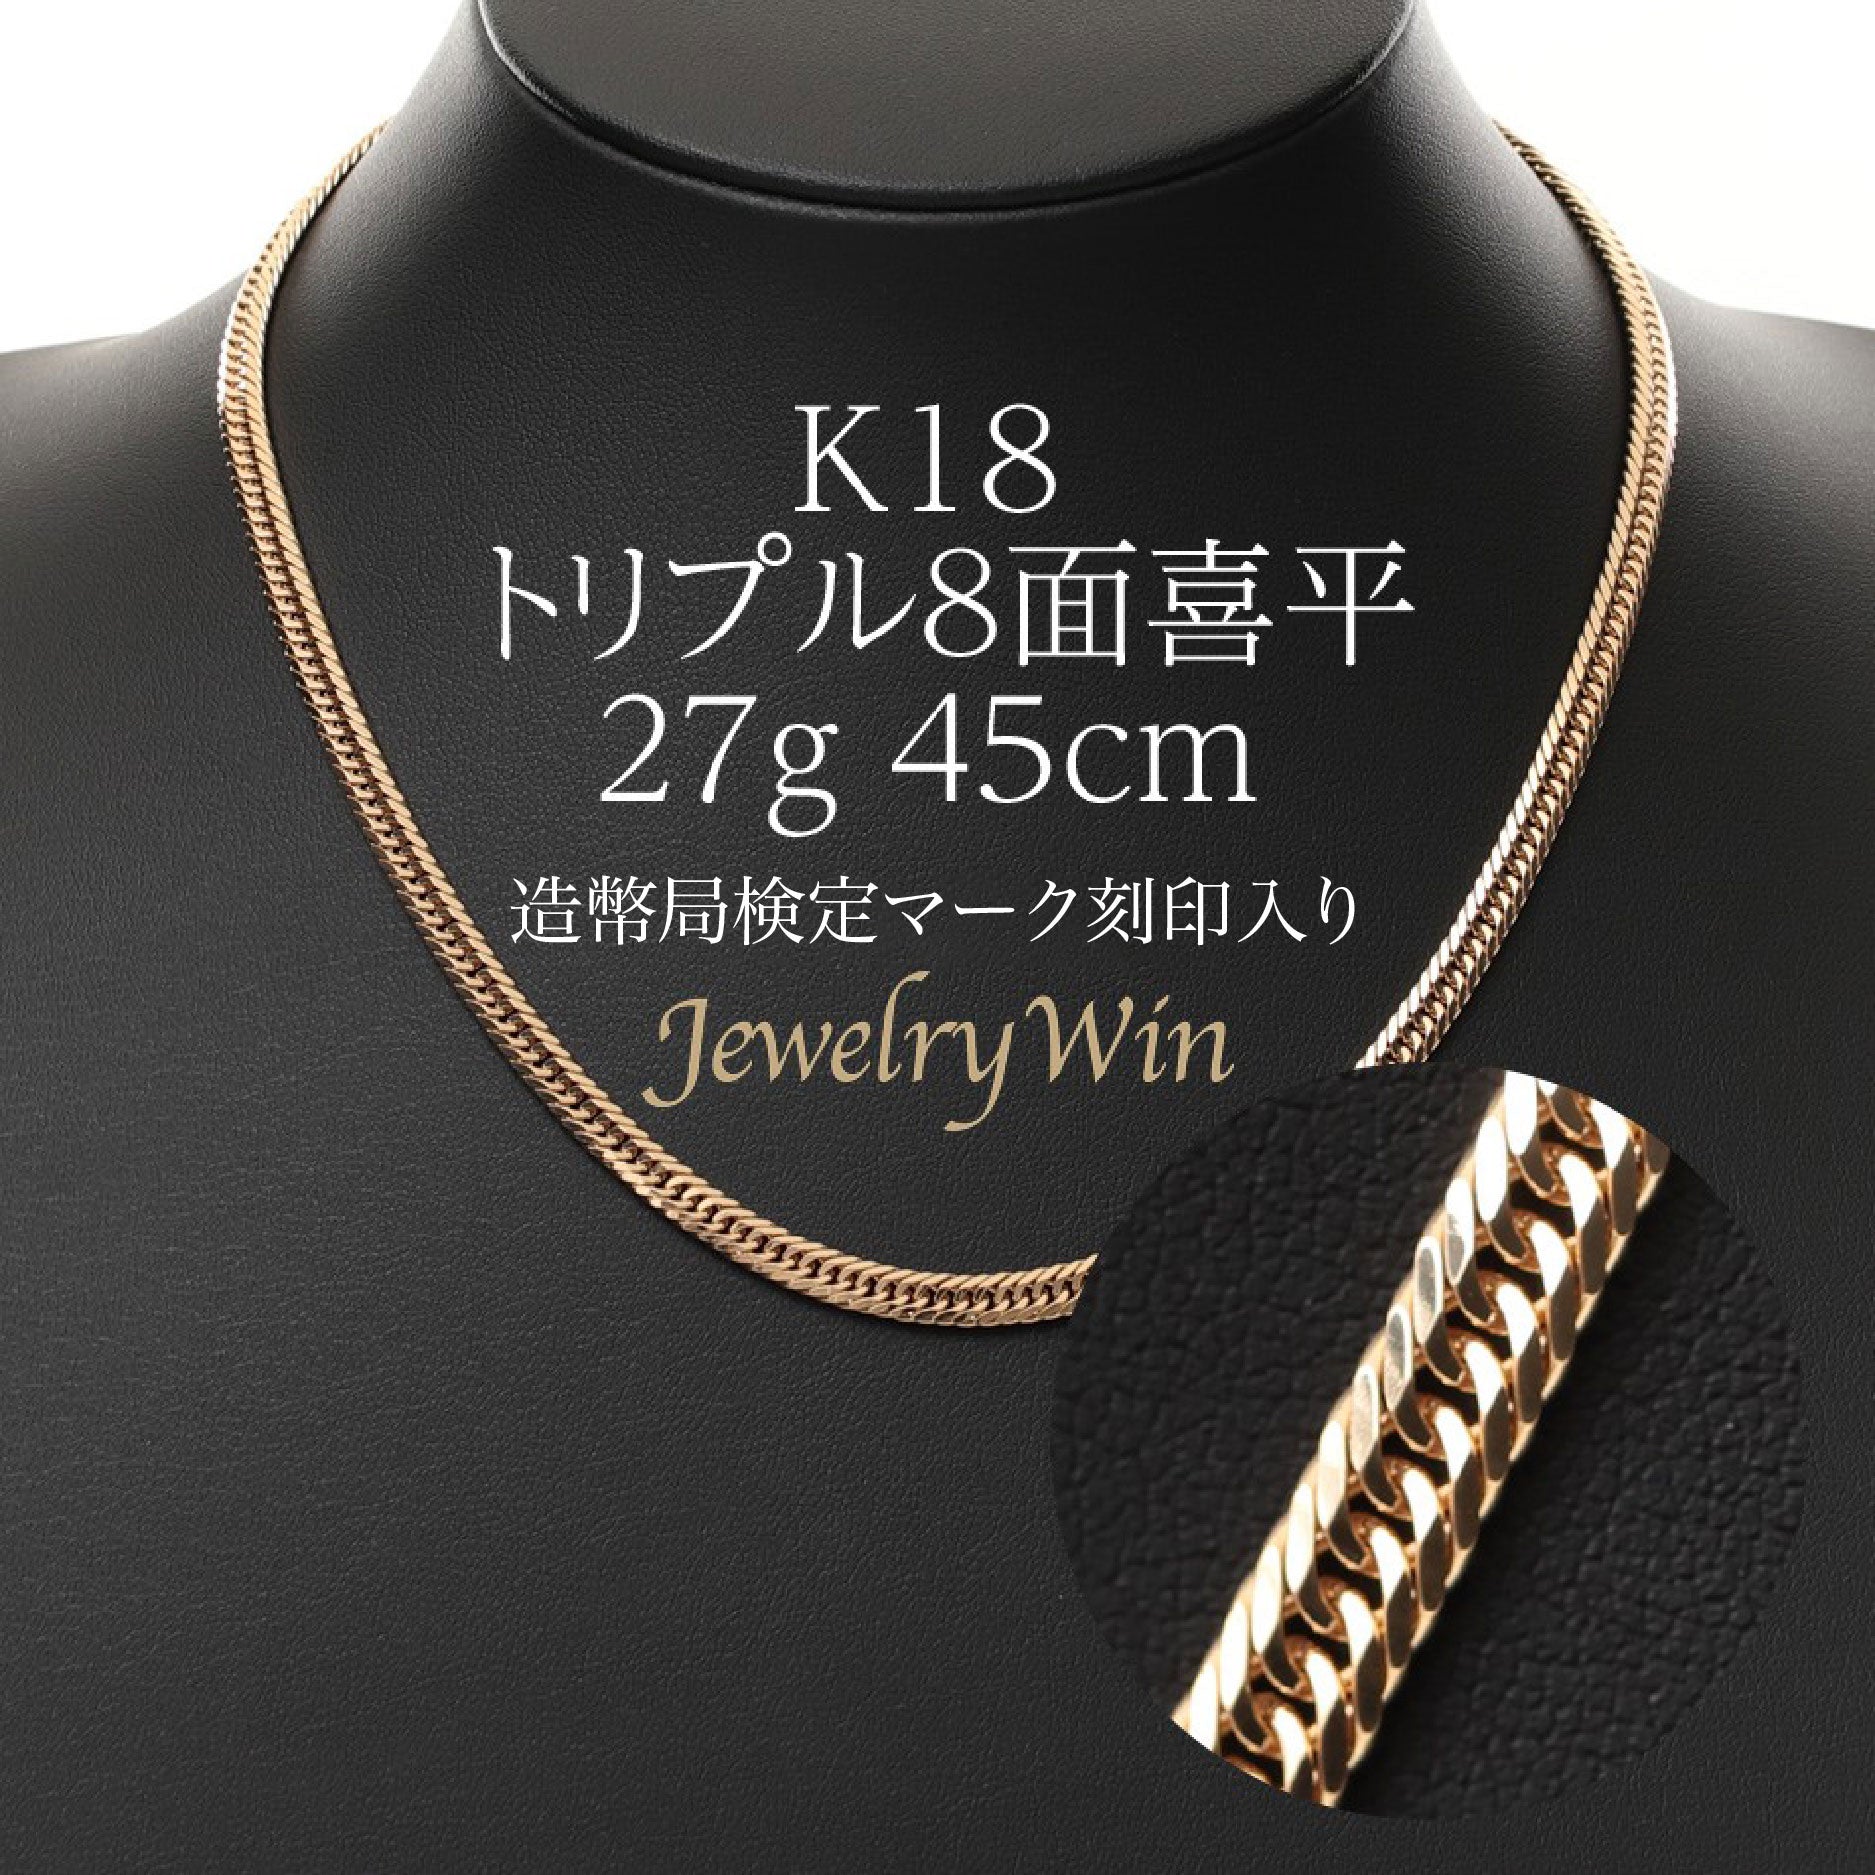 ＝＝＝＝＝＝＝＝＝＝《最高品質/日本製18金》喜平ネックレスチェーン/45cm/K18